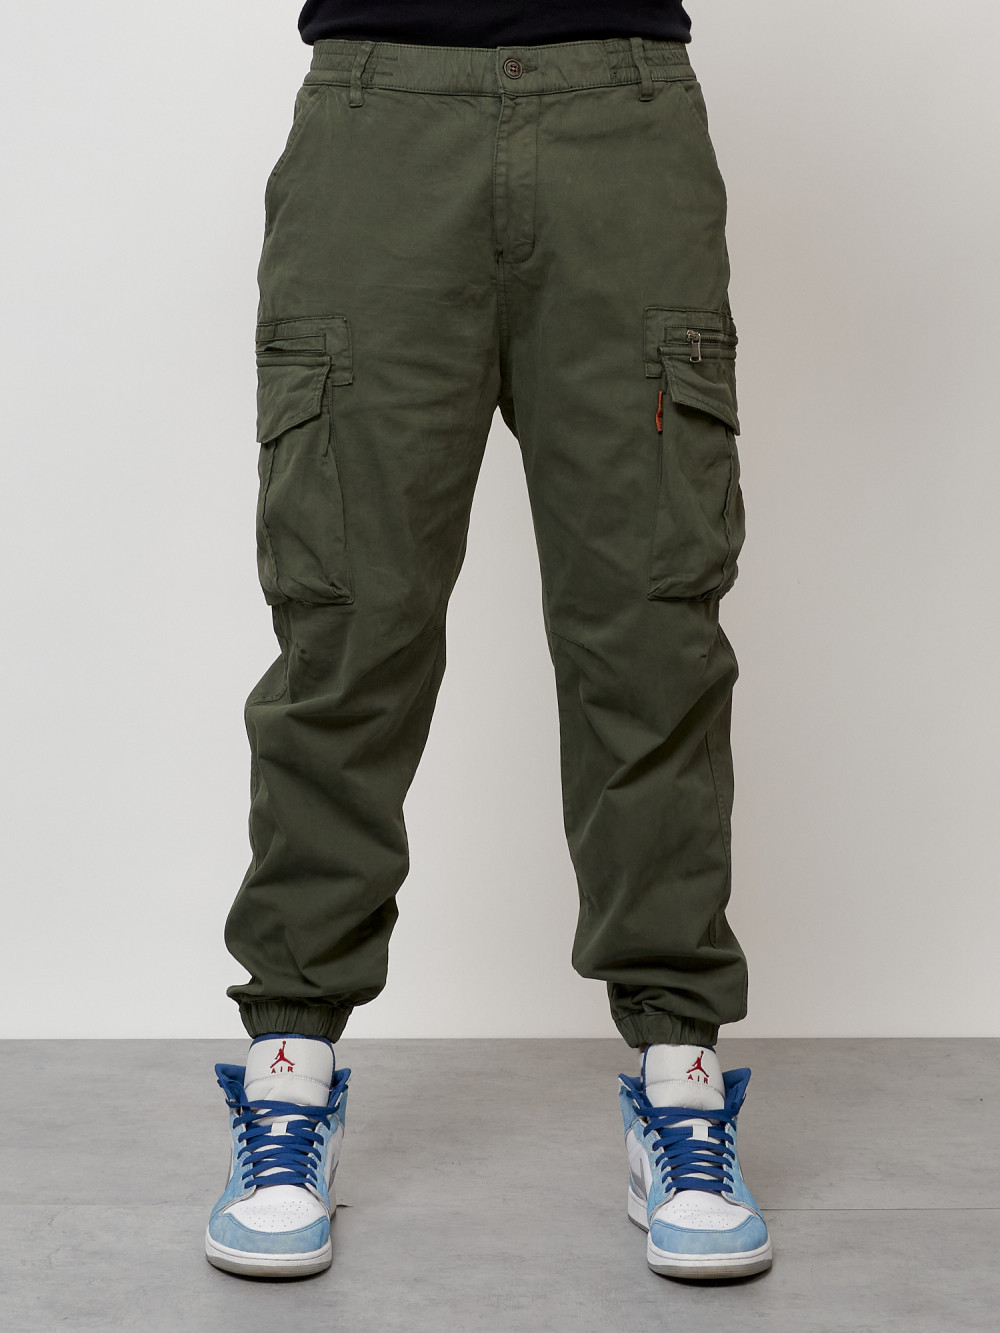 Джинсы карго мужские с накладными карманами цвета хаки 2425Kh